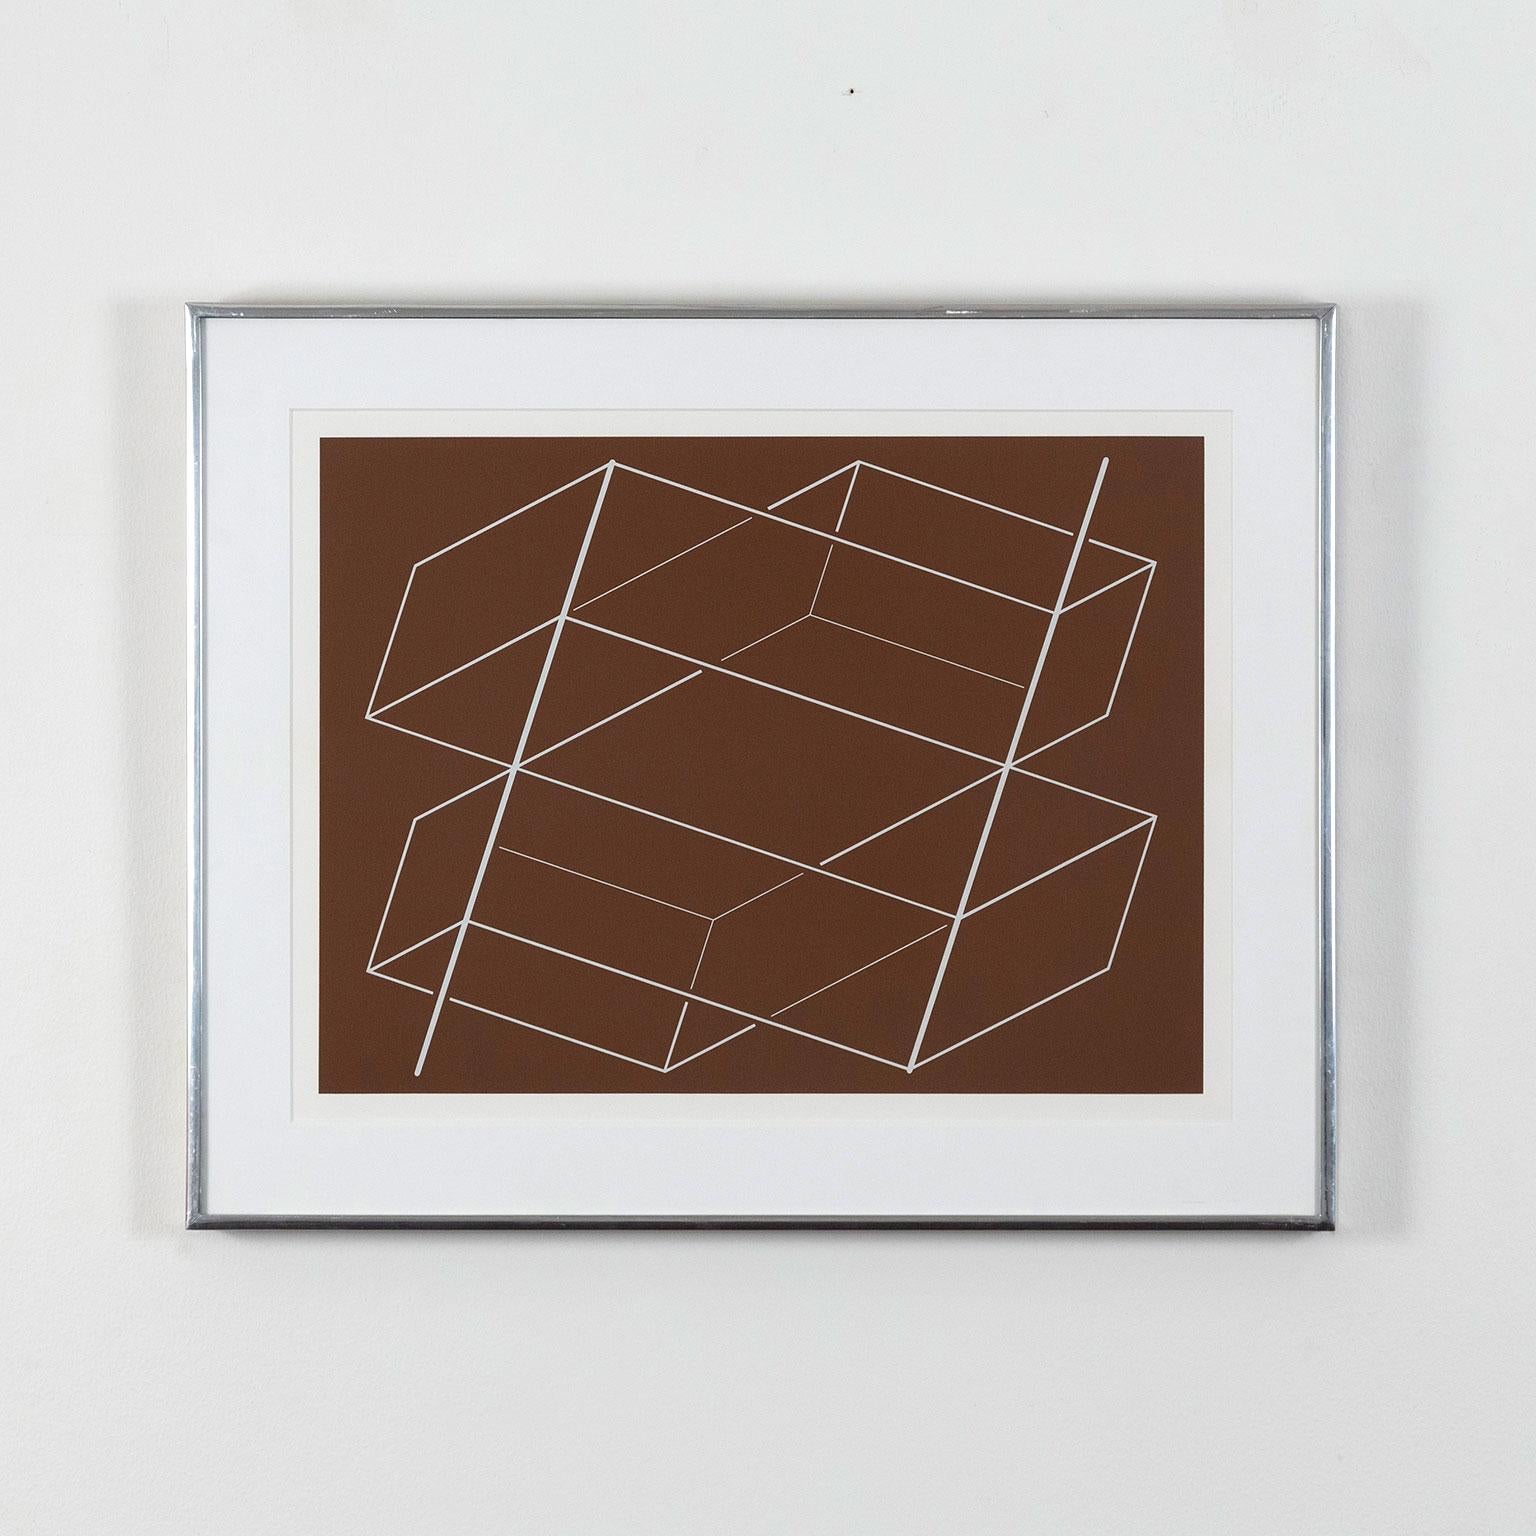 Band-/Pfosten – P1, F3, I2 – Print von Josef Albers